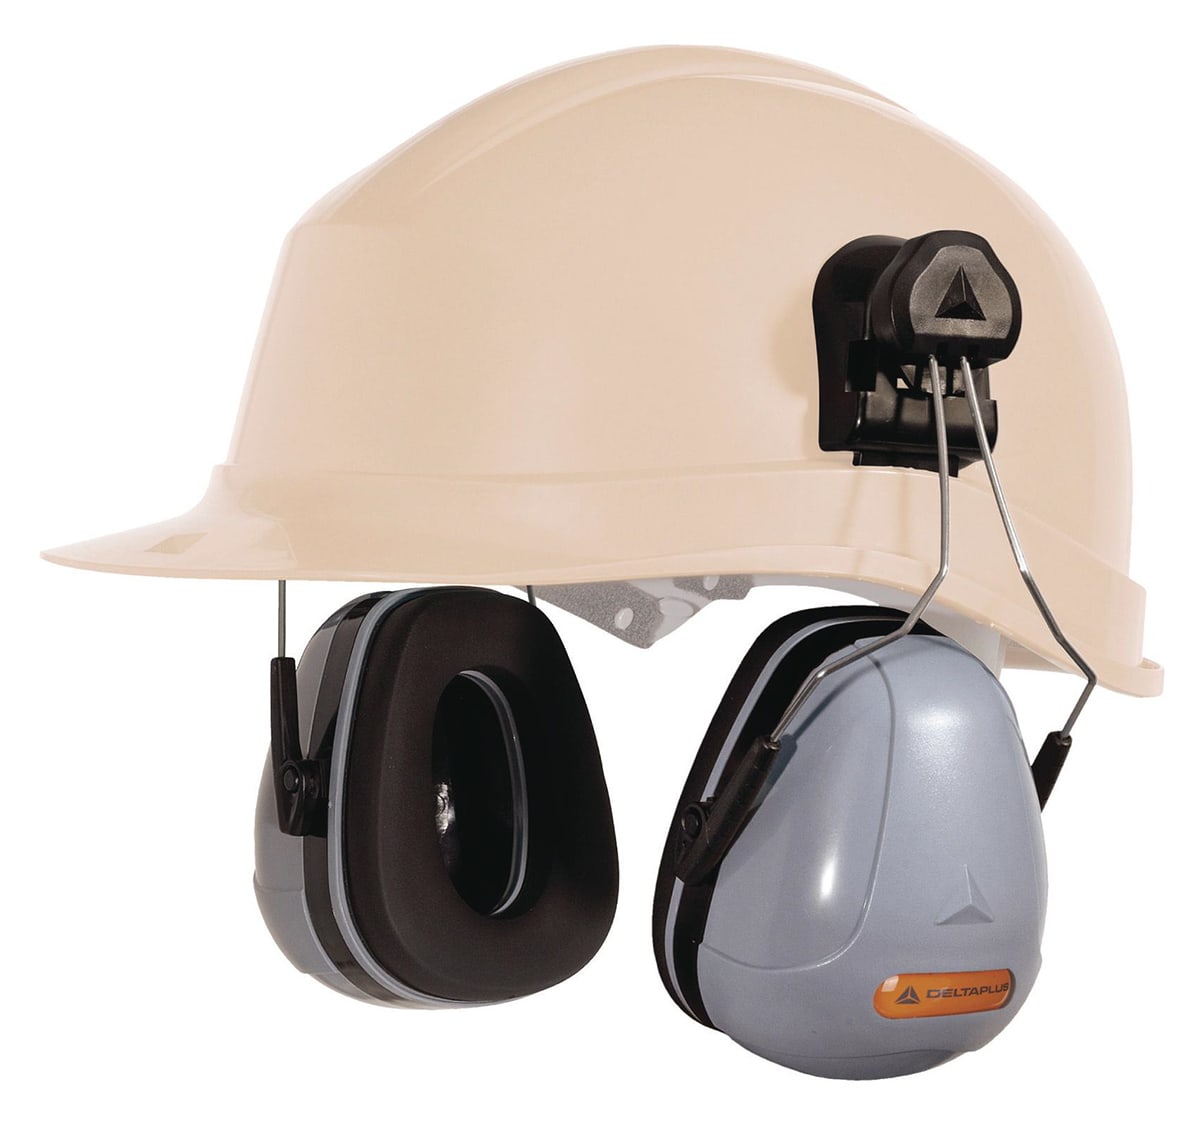 Qué cascos de protección auditiva necesitas según normativa? - Blog